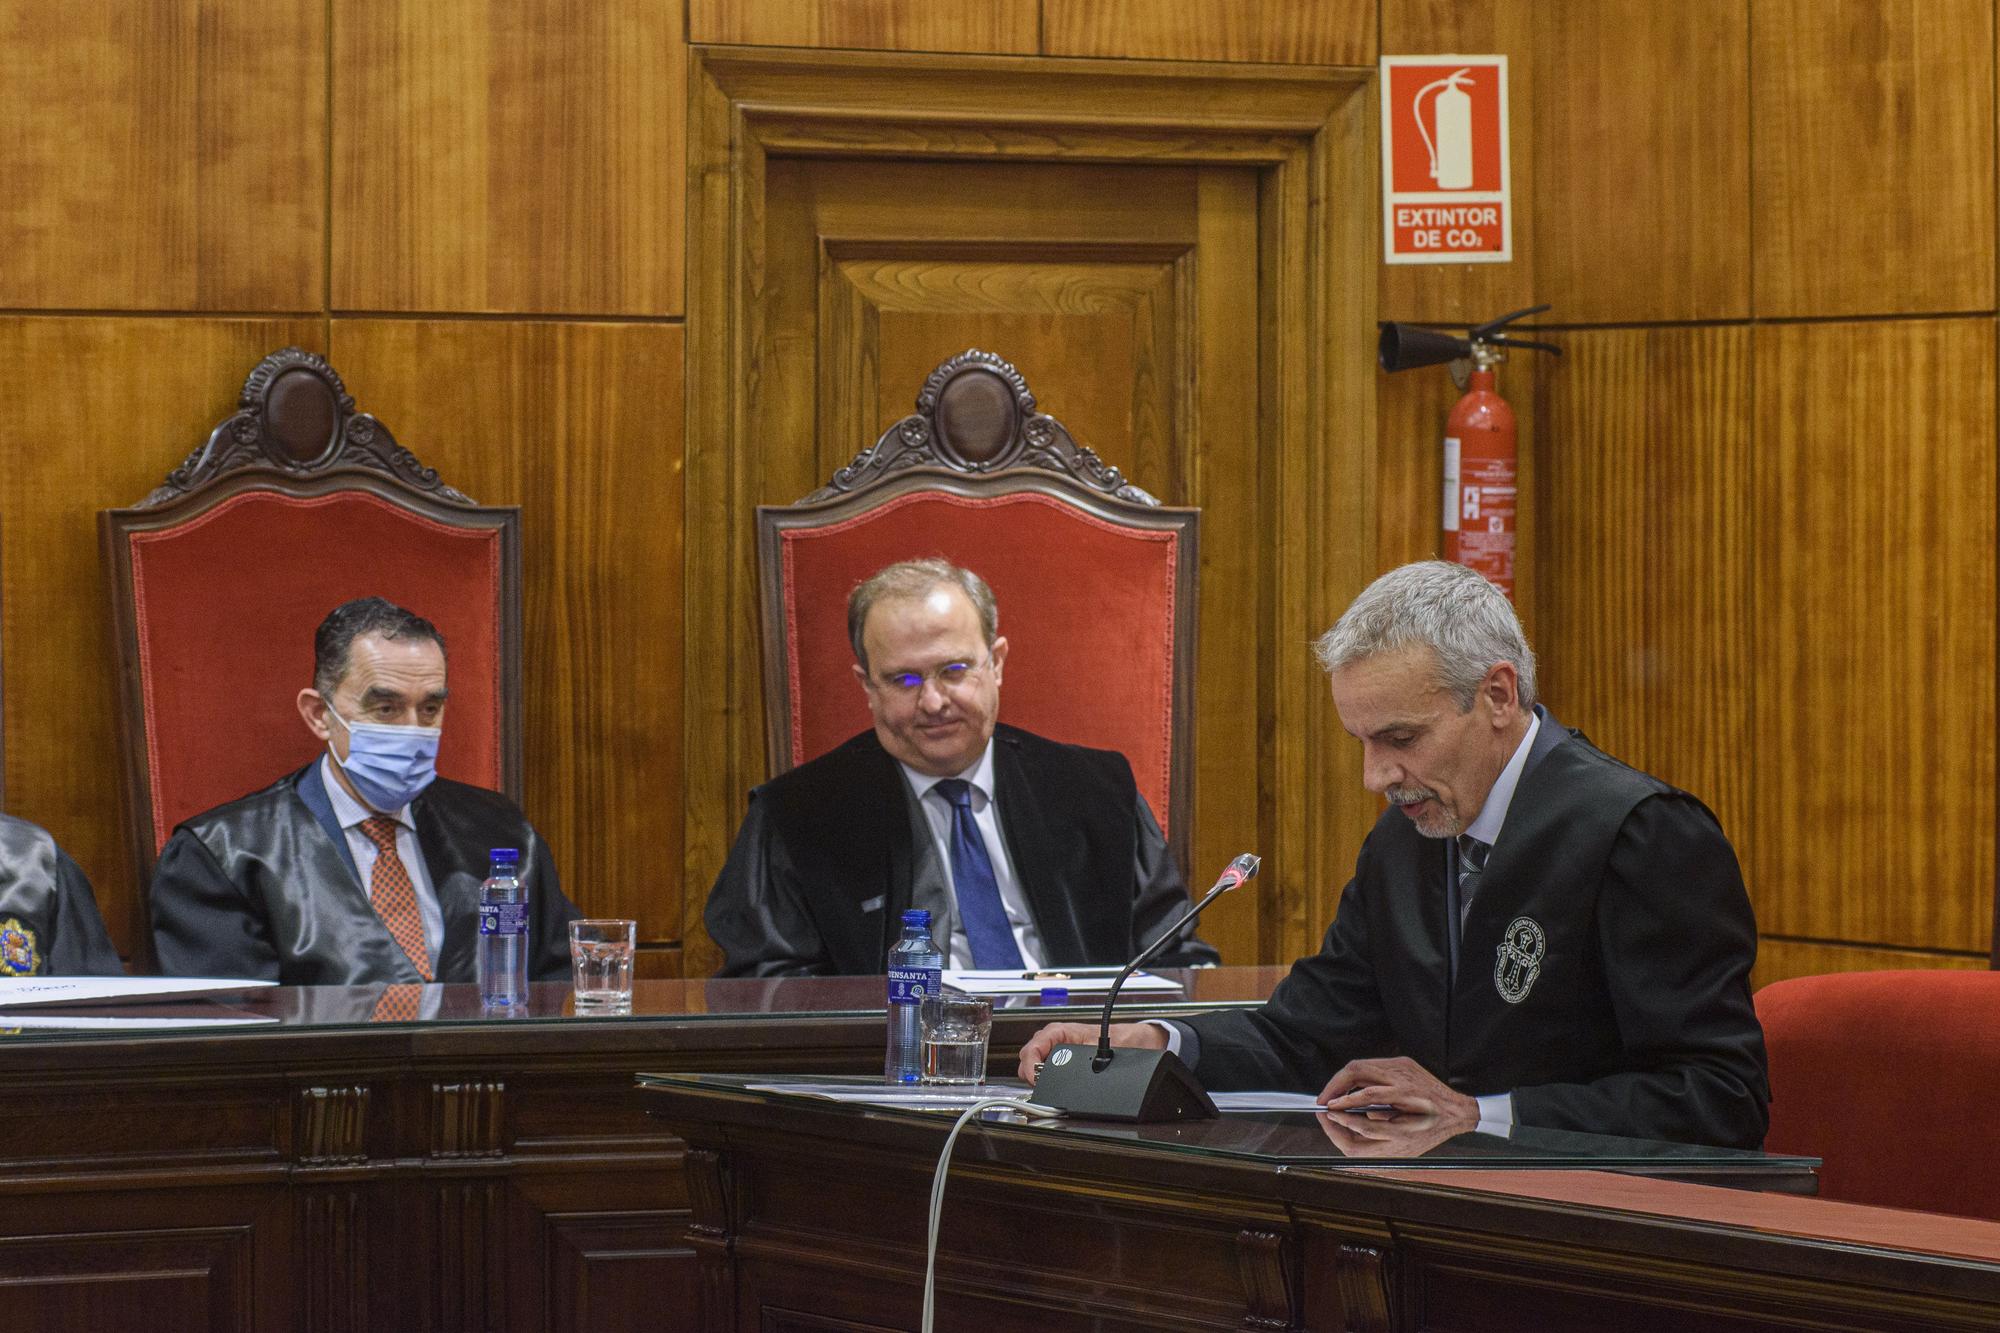 EN IMÁGENES: Así fue el discurso del juez Juan Luis Requejo como nuevo miembro de la Real Academia Asturiana de Jurisprudencia